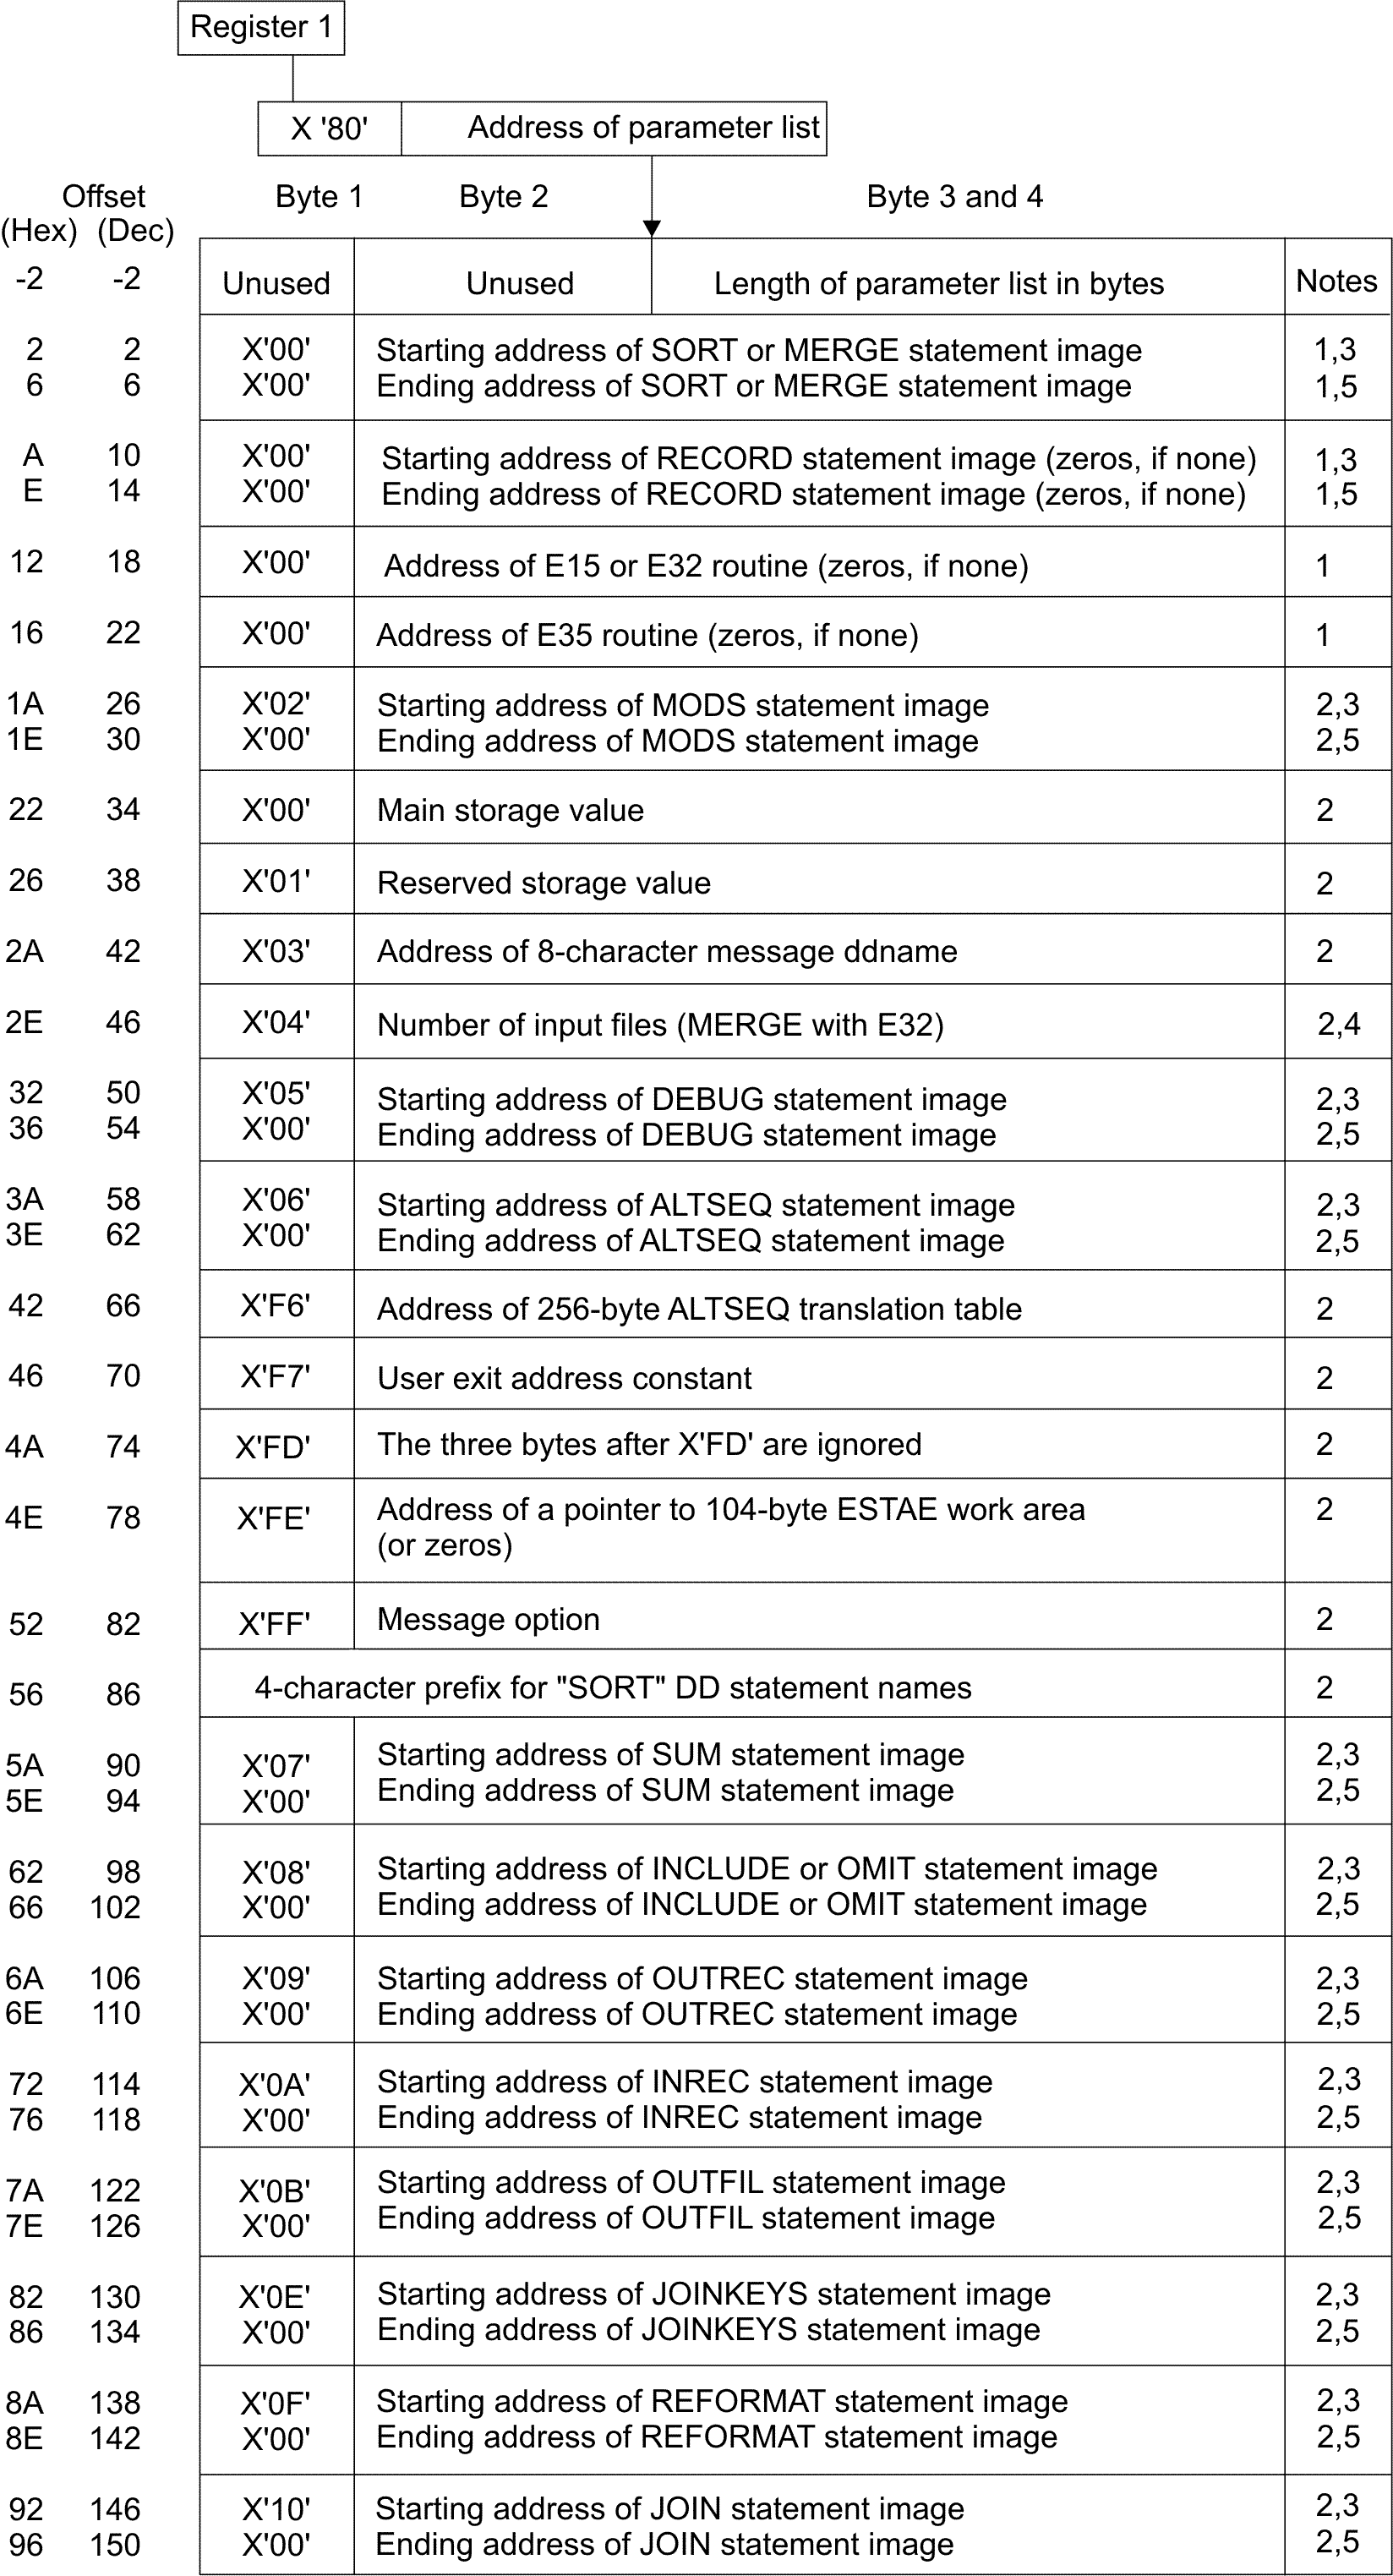 The 24-Bit Parameter List